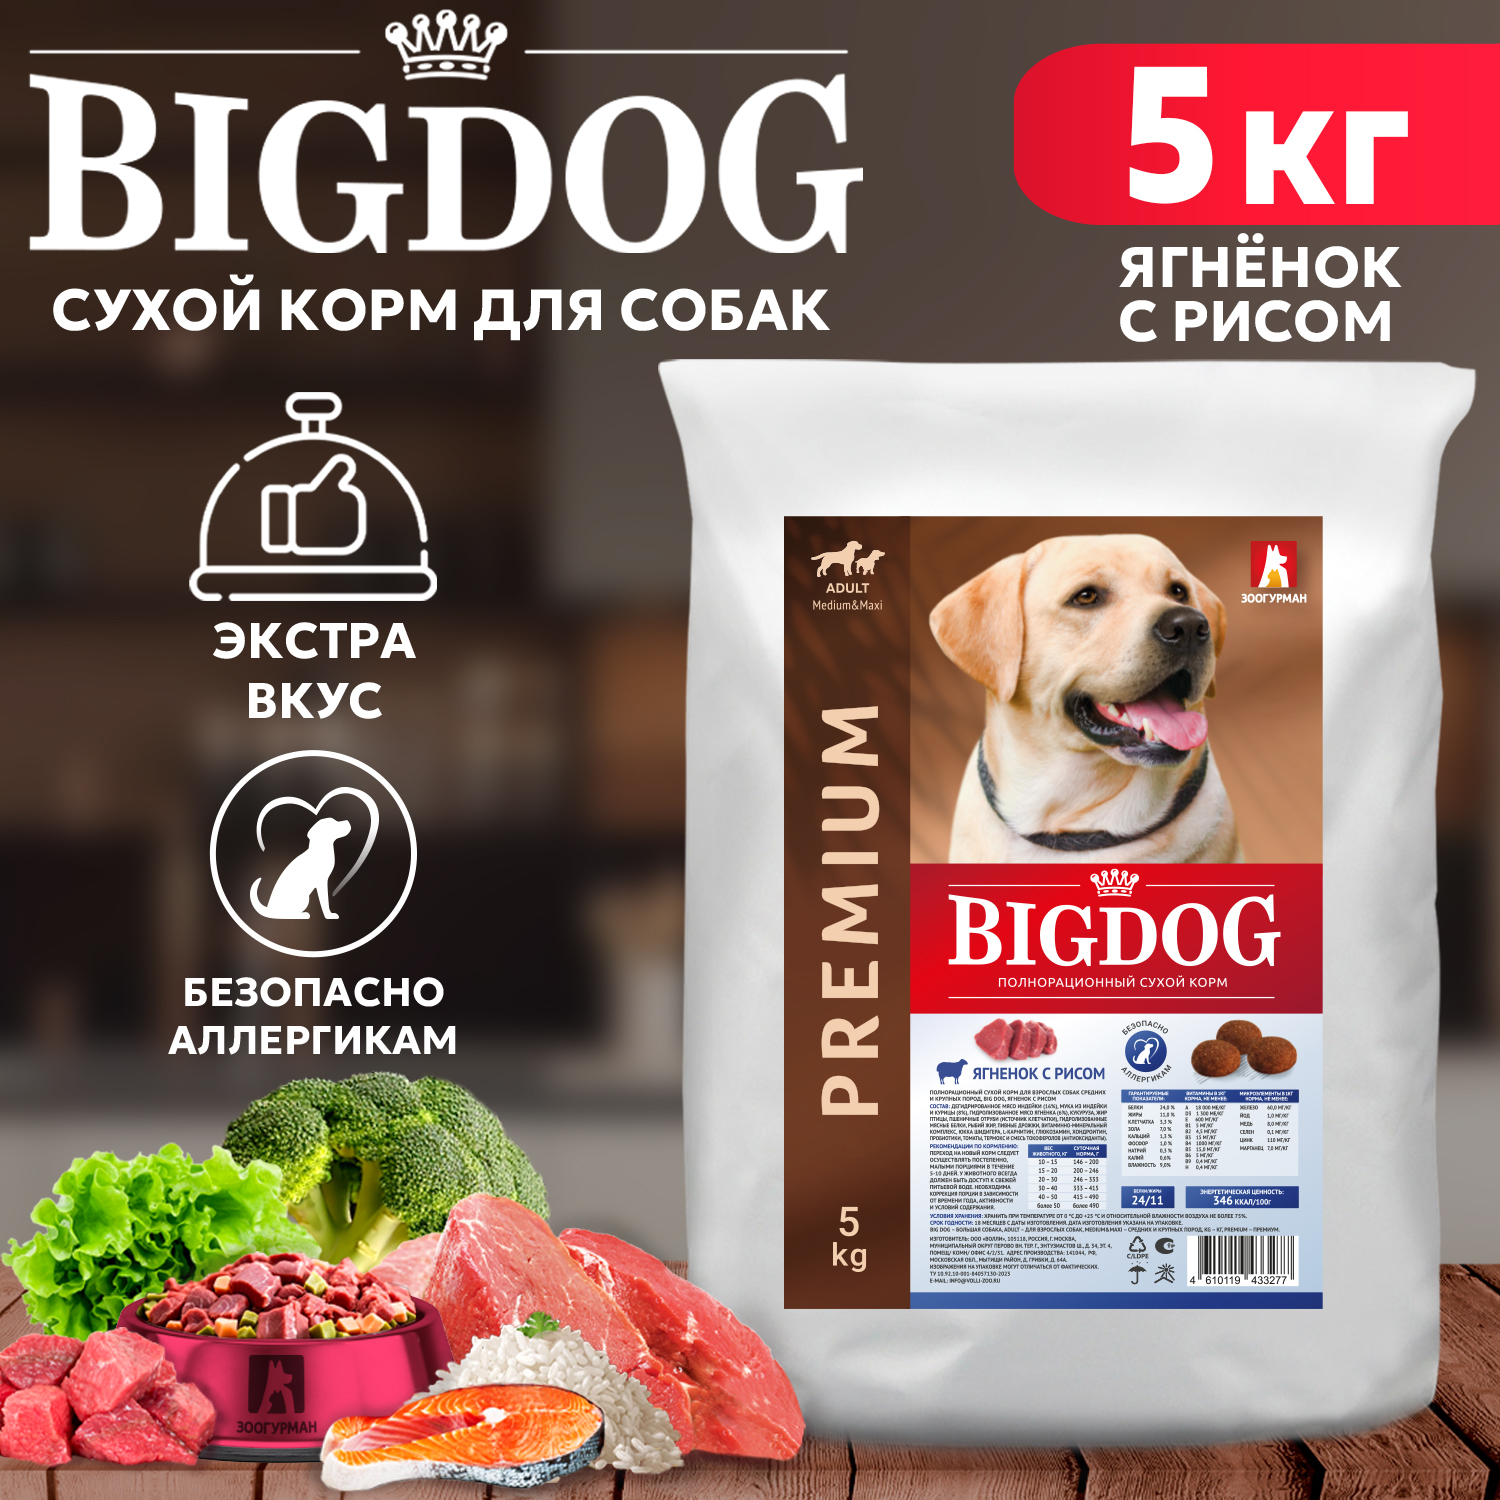 Сухой корм для собак BIG DOG, для взрослых, средних и крупных пород, ягненок с рисом, 5 кг